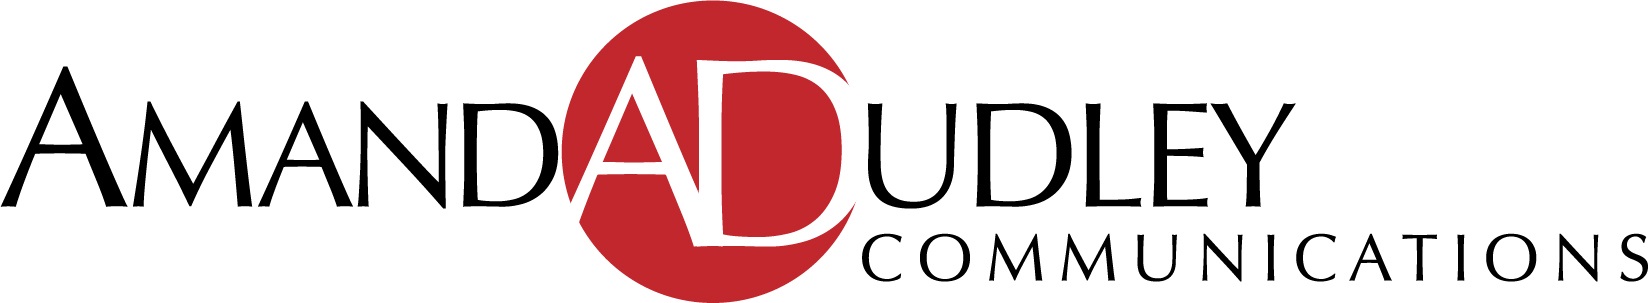 Amanda Dudley Communications, LLC